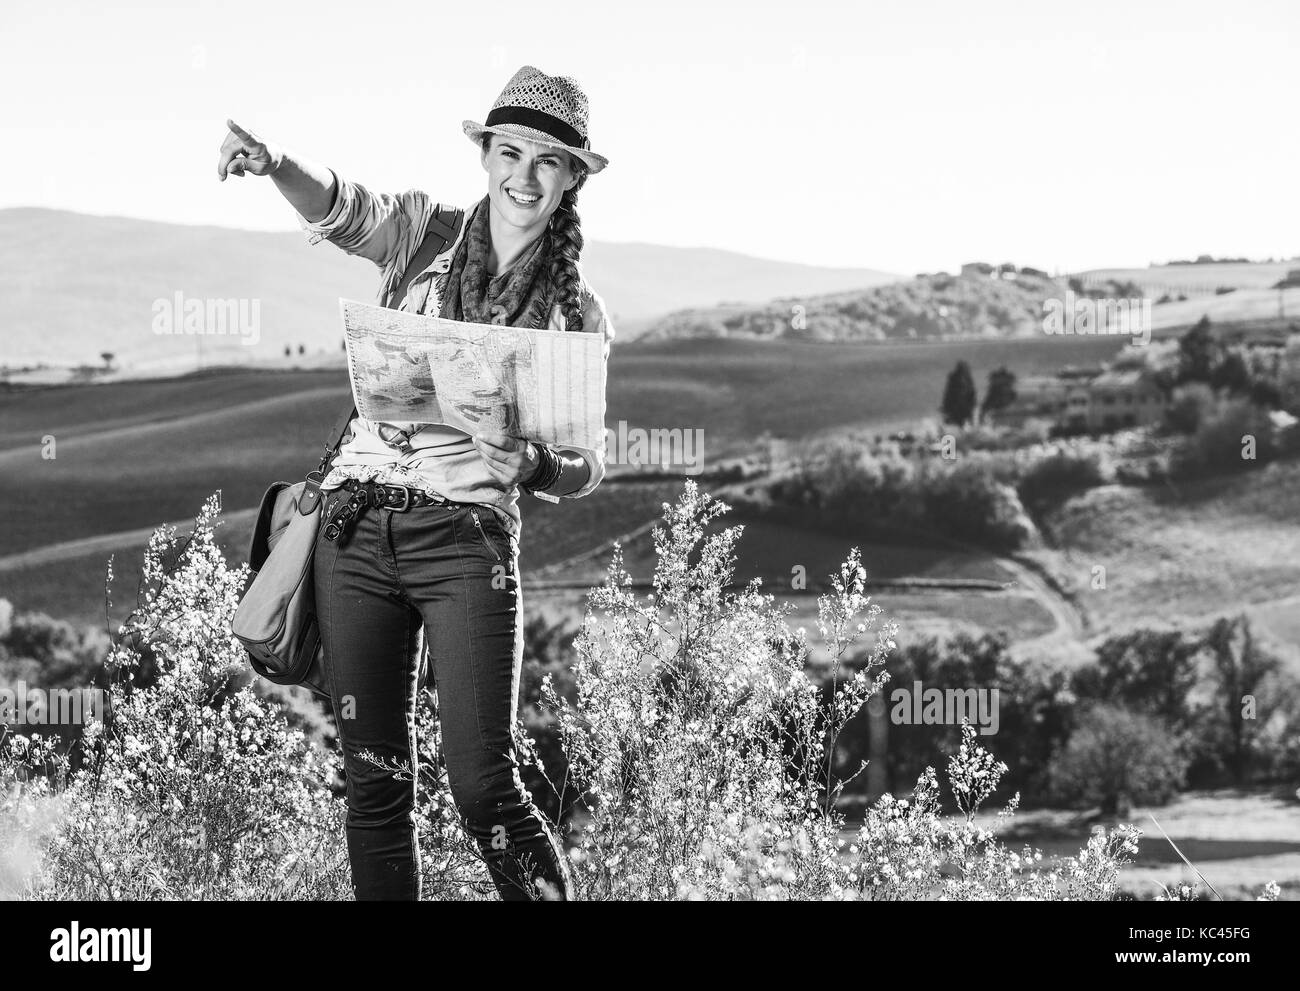 Entdecken Sie magische Ausblicke der Toskana. glückliche junge Frau Wanderer mit Tasche auf der Toskana Wanderung mit Karte und zeigen Stockfoto